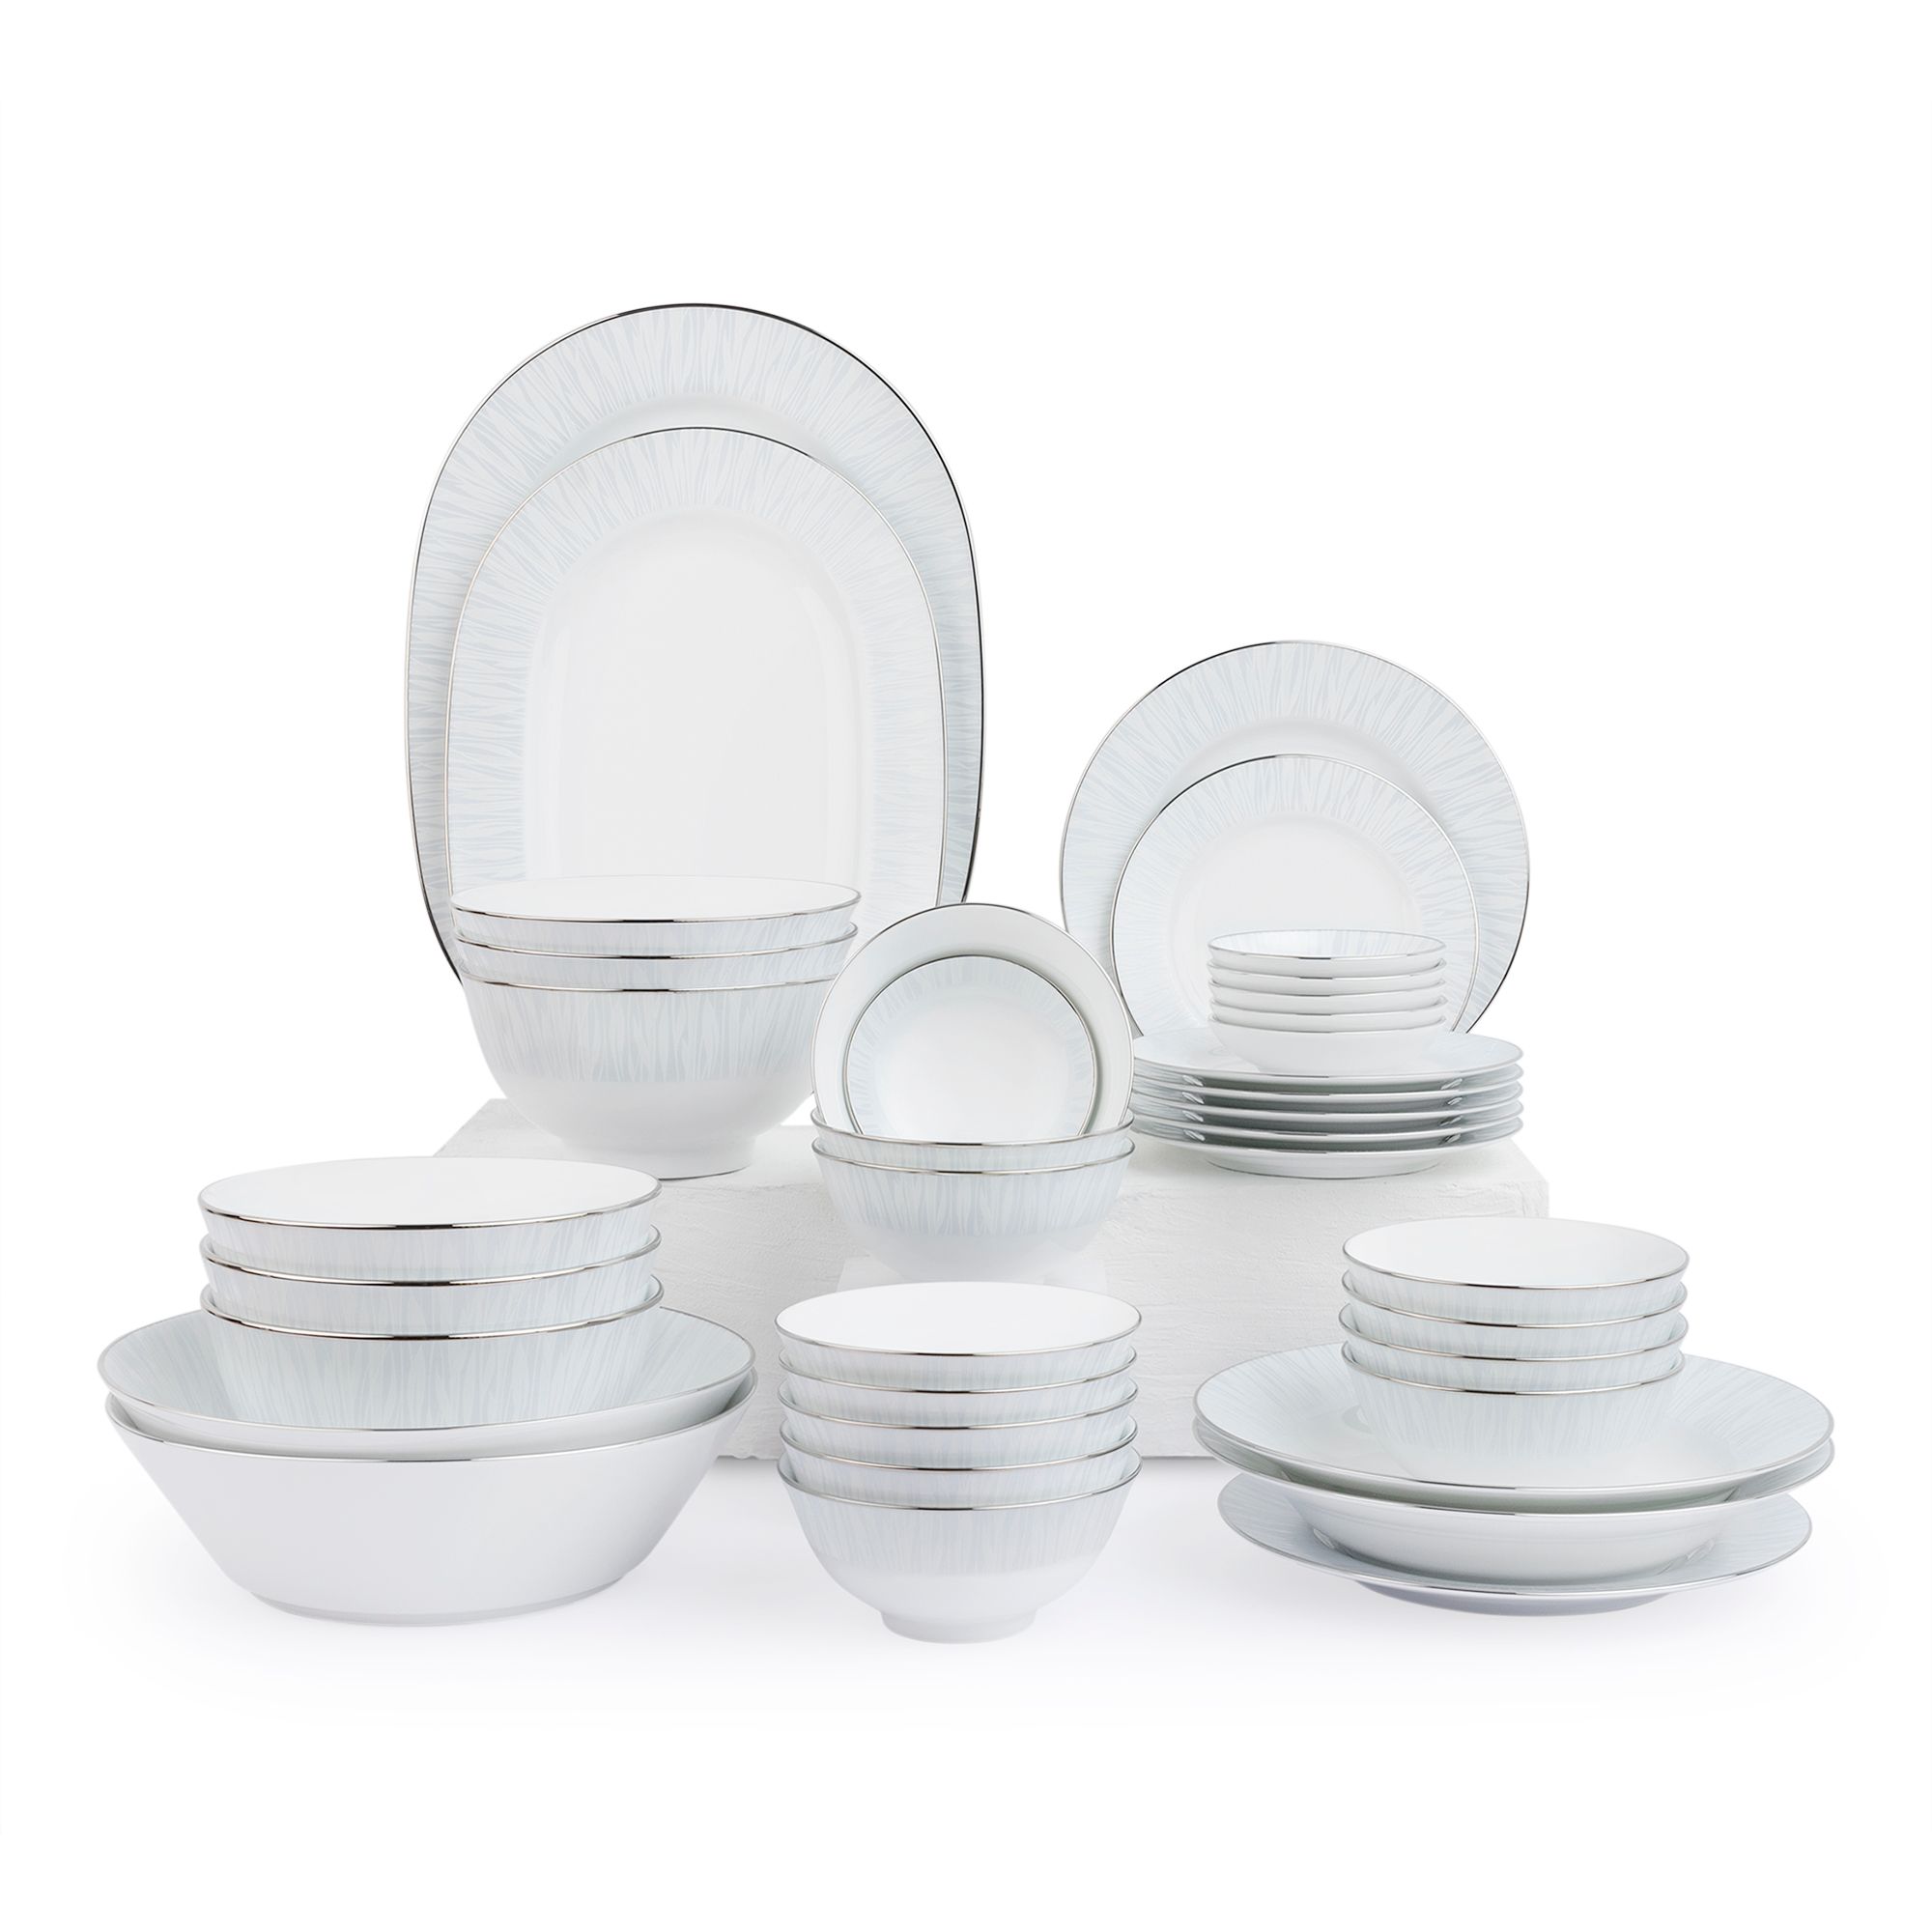  Bộ bát đĩa ăn Châu Á đầy đủ 38 món sứ trắng | Glacier Platinum 1702 